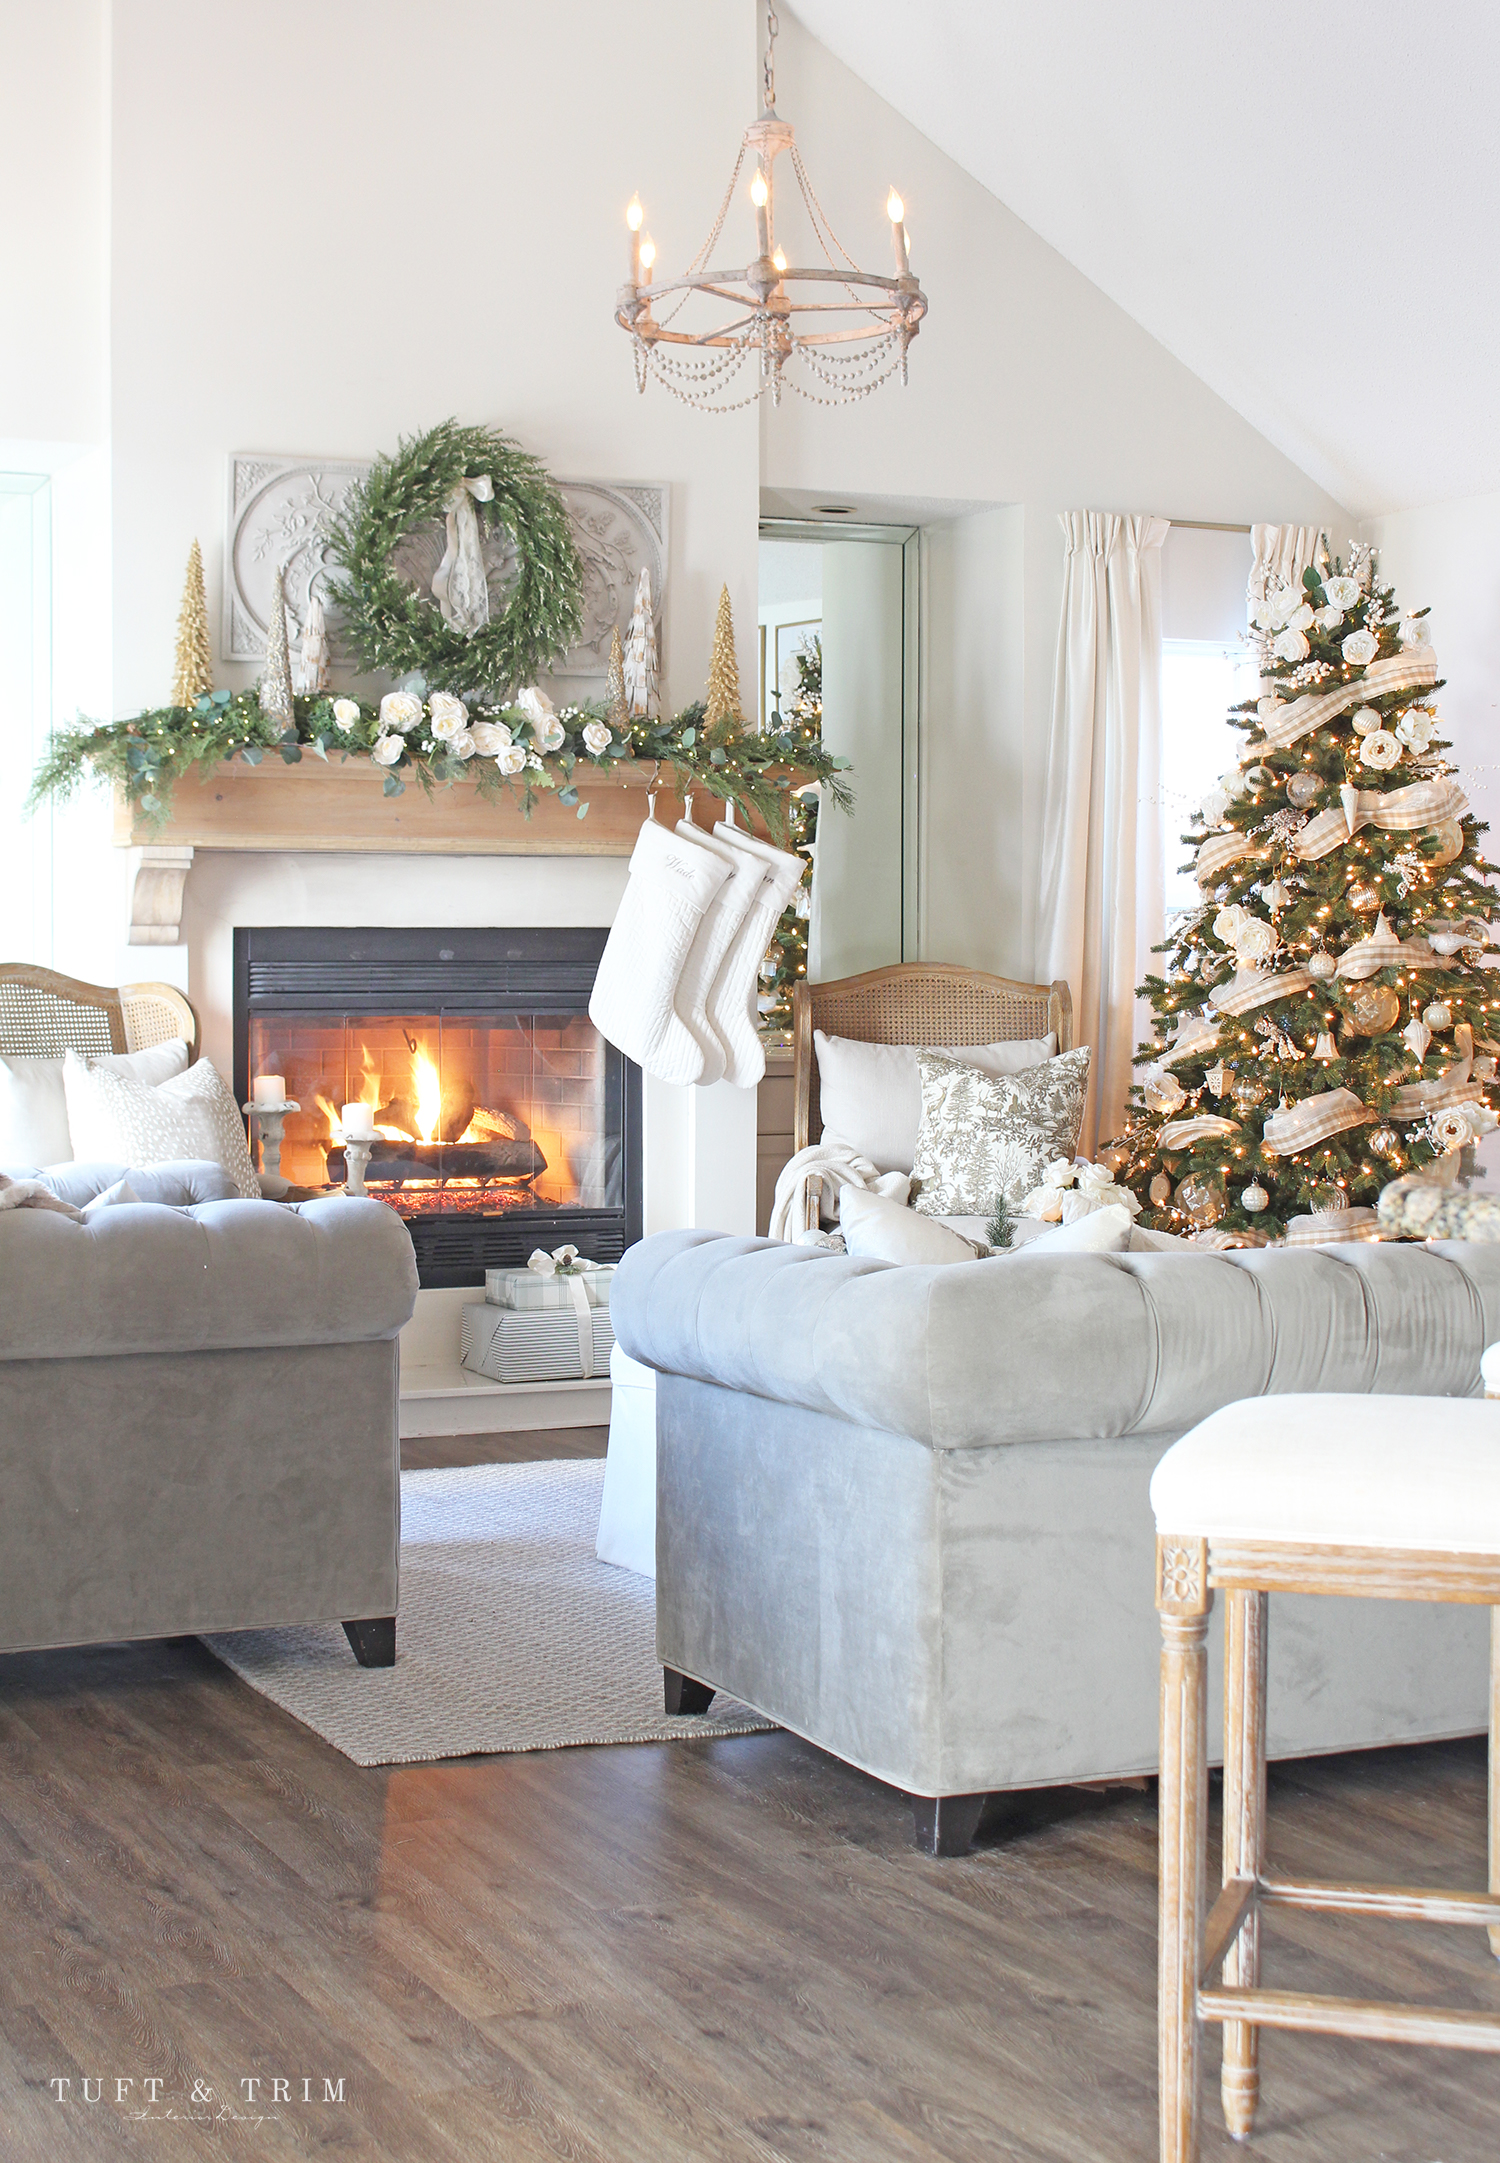 Classic Christmas Home Tour 2020 with Tuft & Trim Interior Design